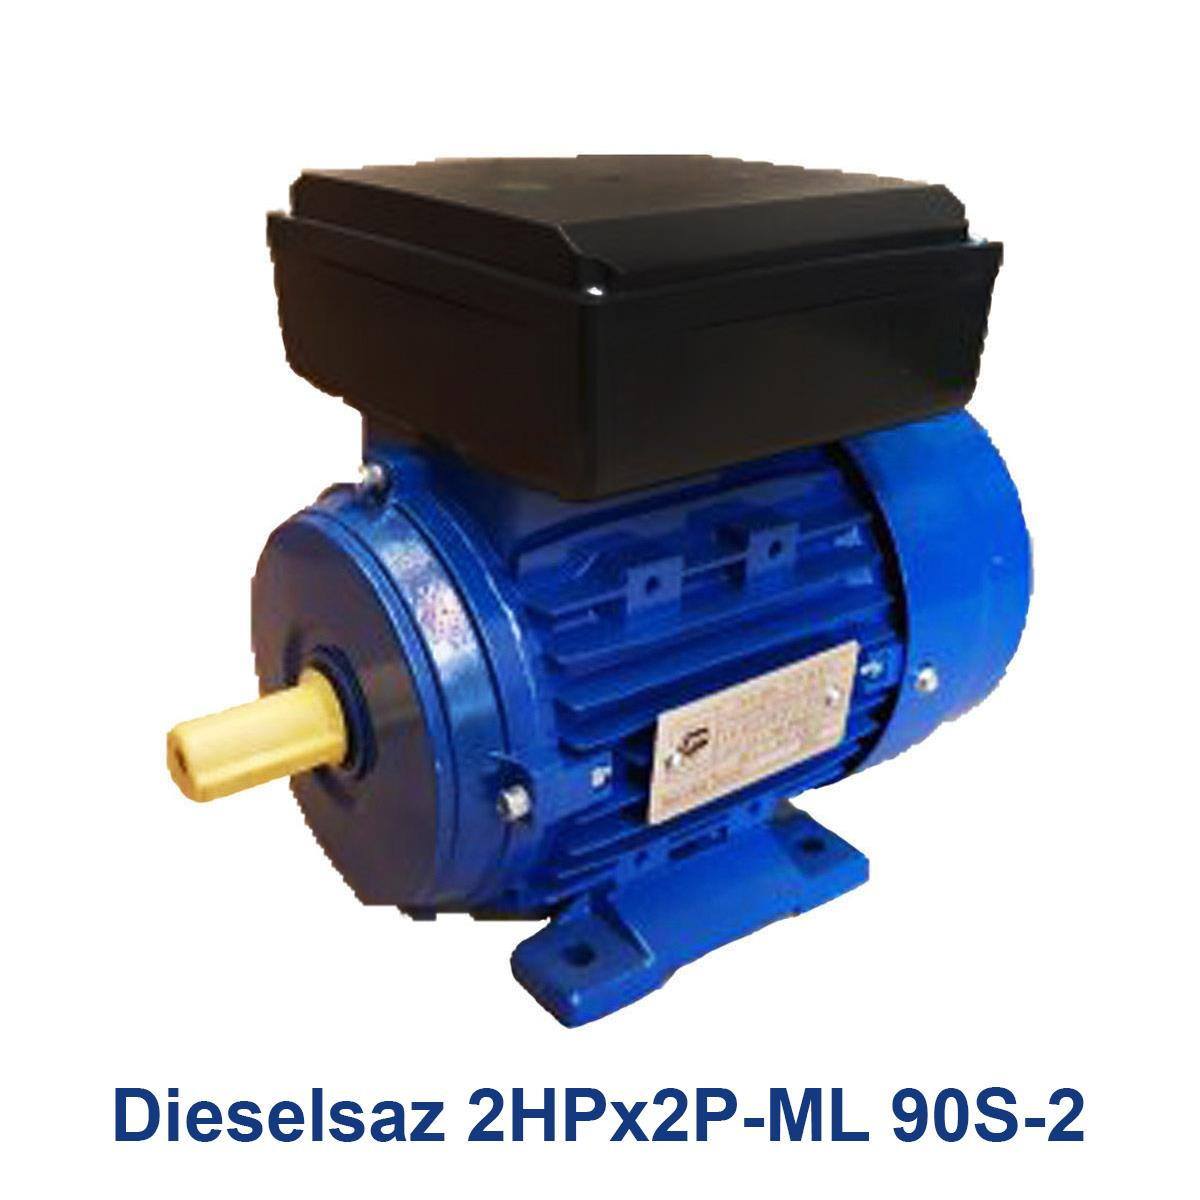 Dieselsaz-2HPx2P-ML-90S-2